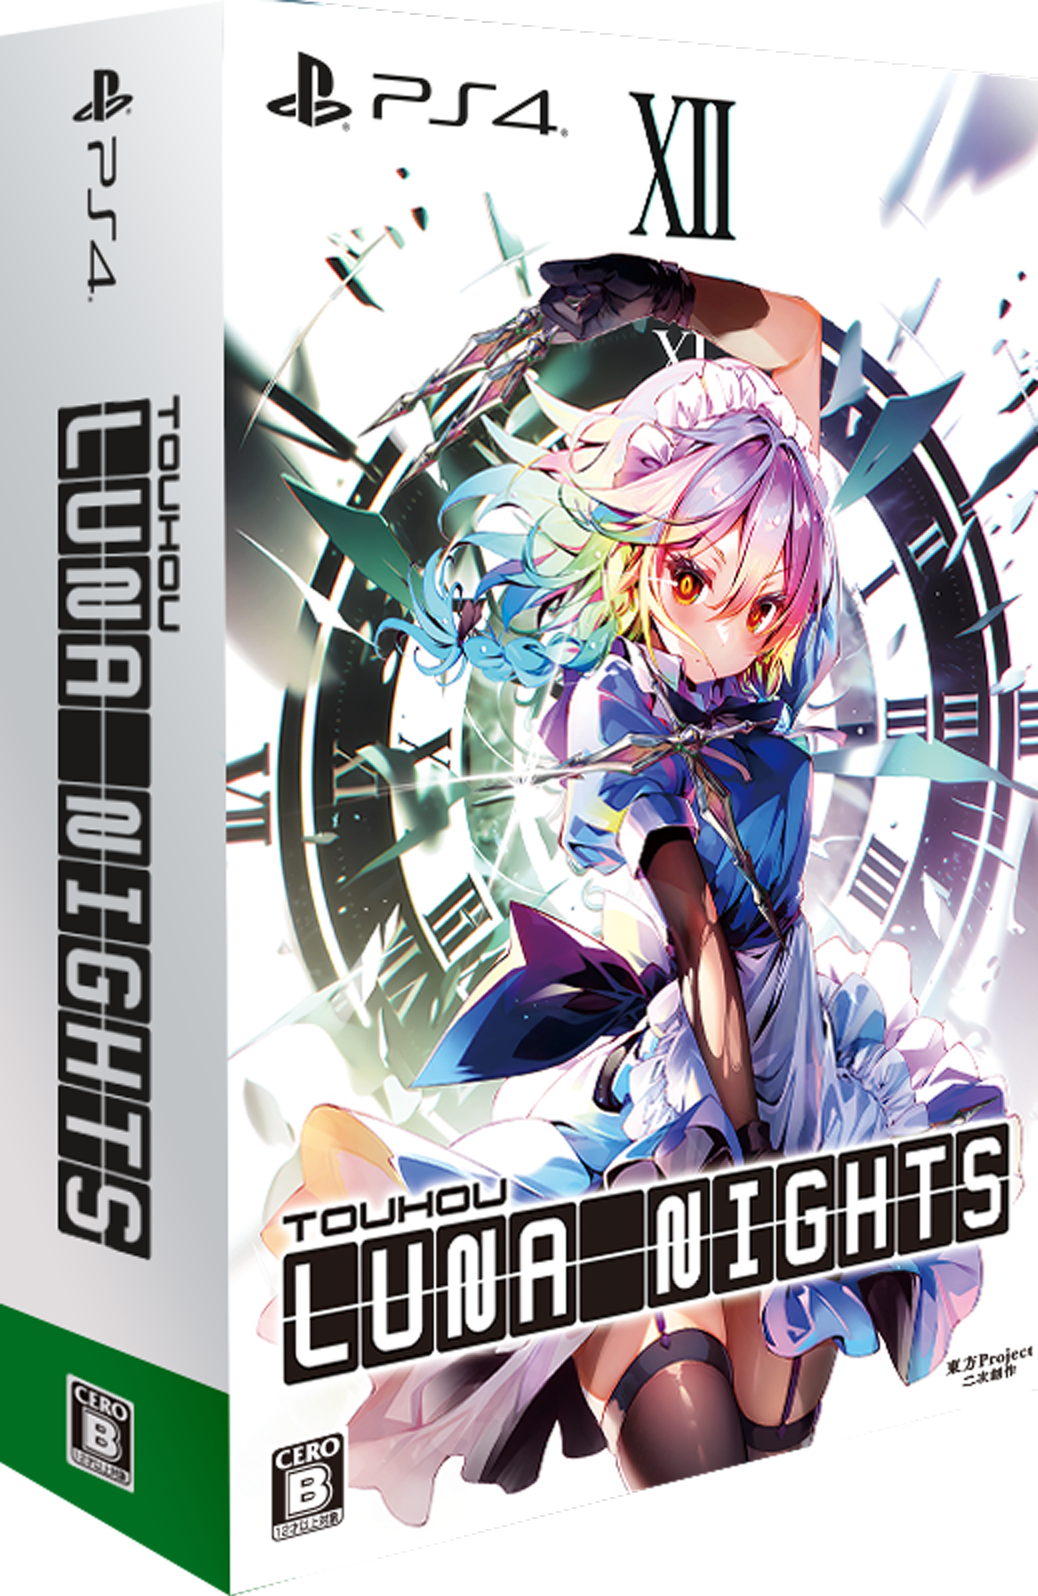 Touhou Luna Nights PS4 デラックス版/ストアオリジナル特典付き【初回 